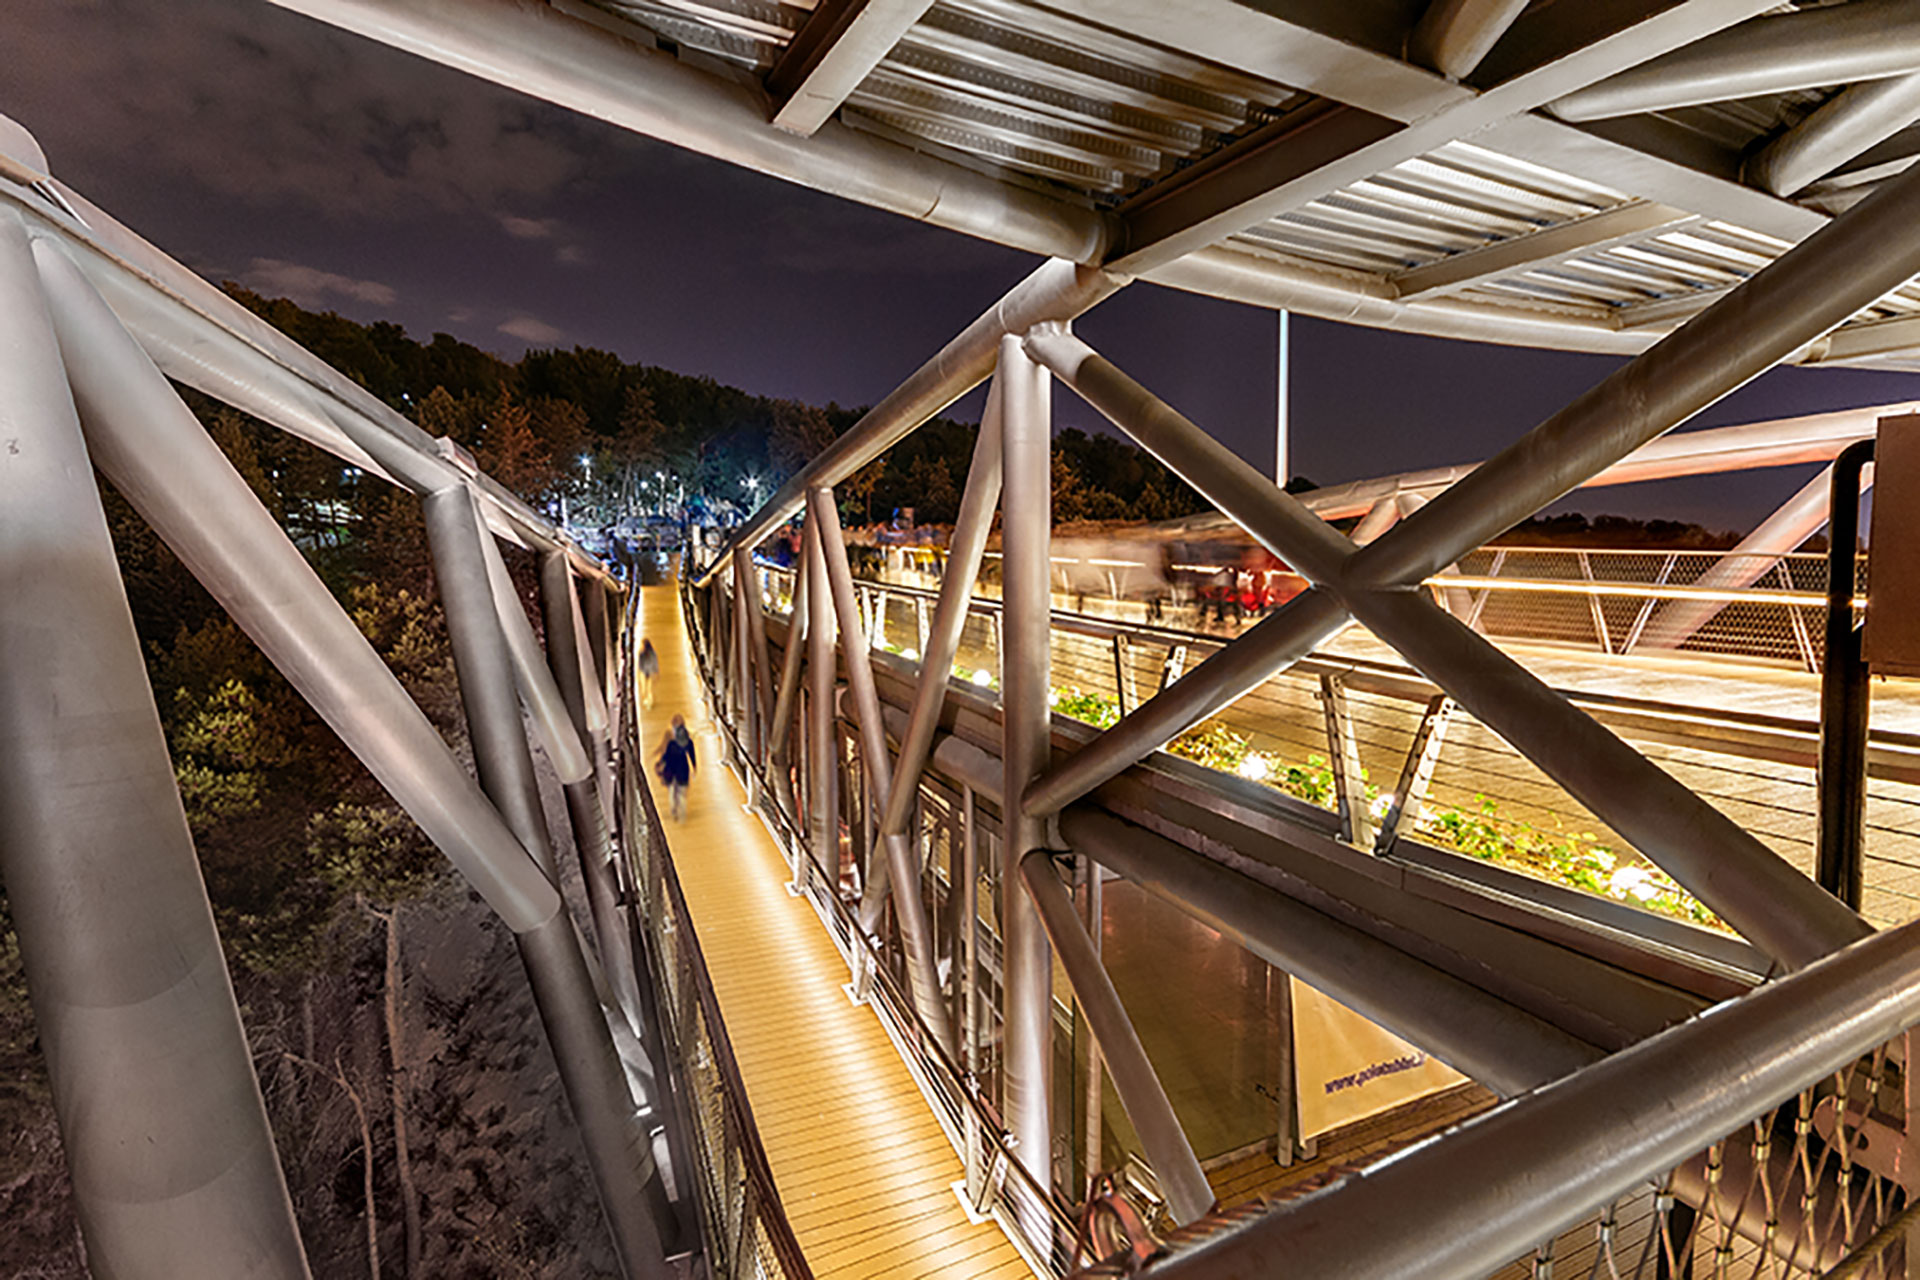 مشخصات فنی پل طبیعت و مصالح استفاده شده در ساخت